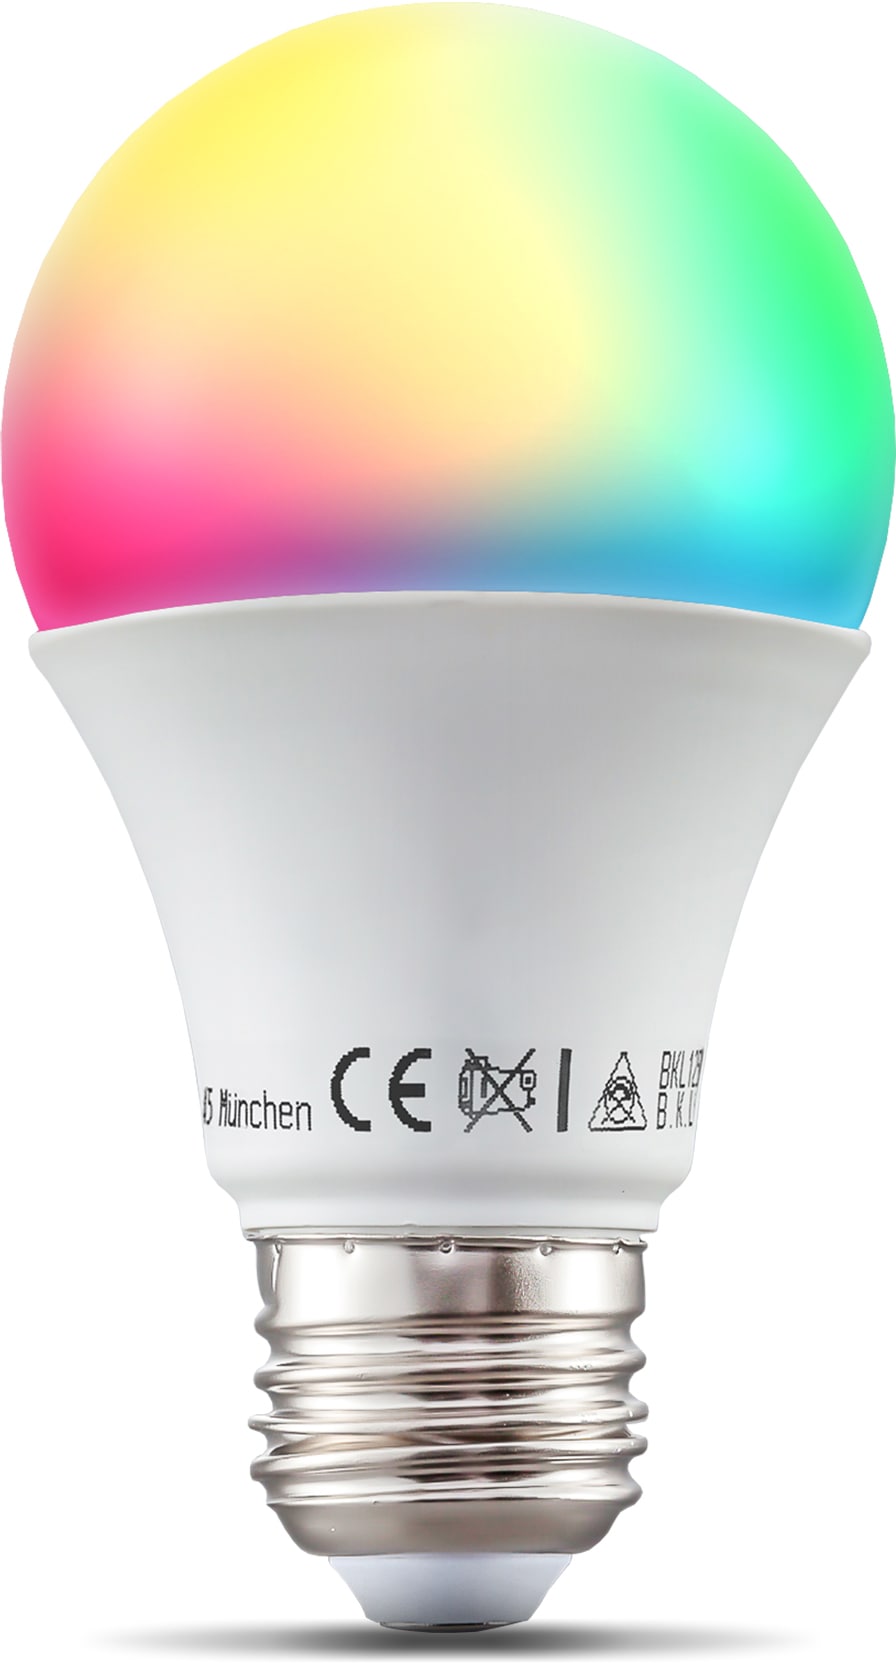 Smarte LED E27 Birne Alexa Google steuerbar via App dimmbar RGB & Licht  3000K-6500K